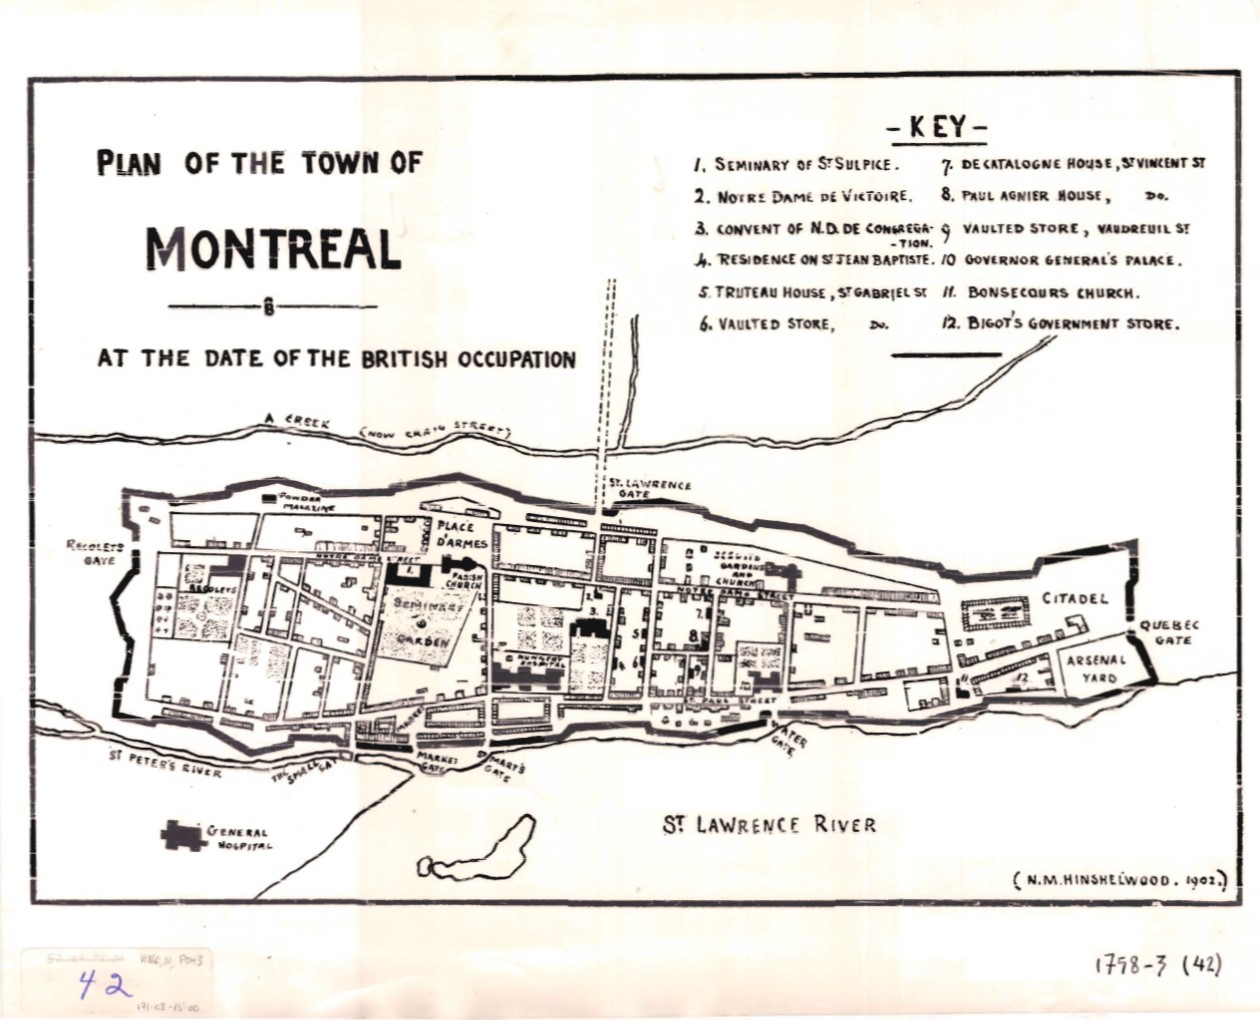 Représentations de Montréal en 1556, 1645, 1758, 1843, 1897, 1920, 1960, et 1982 (dans l’ordre allant de gauche à droite et de haut en bas). Sources: [Archives Montréal](https://archivesdemontreal.ica-atom.org/).